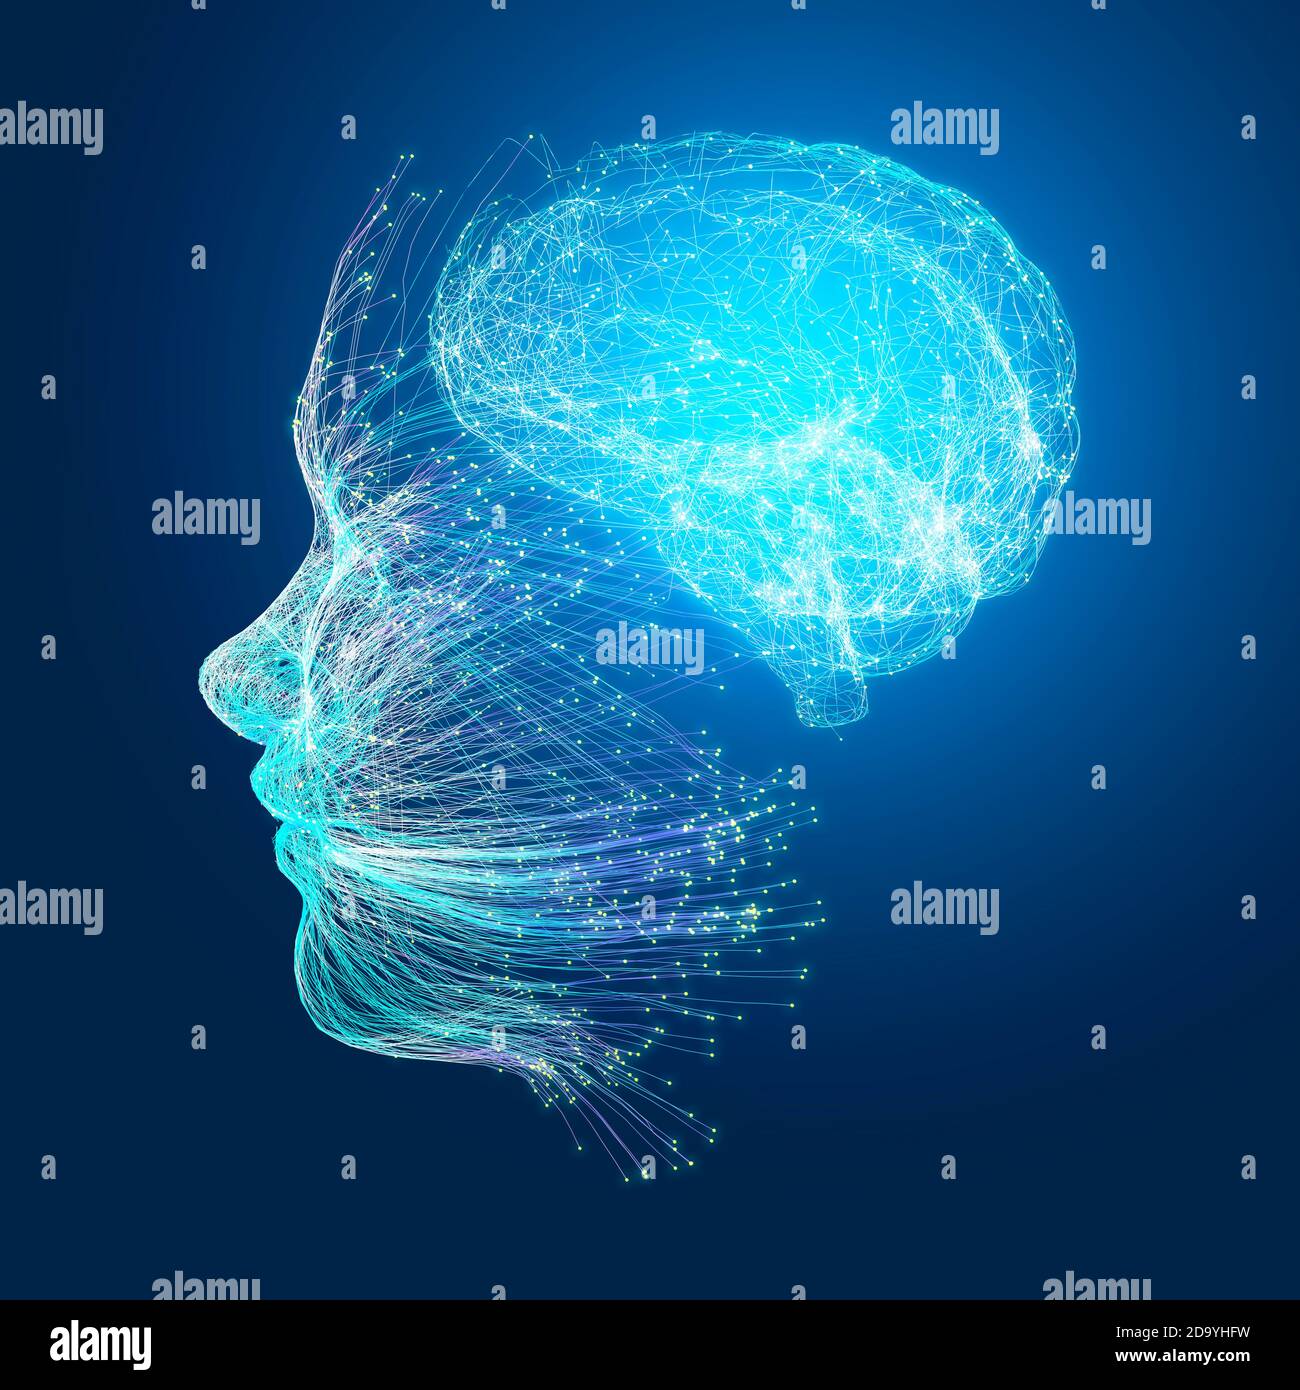 Neurologie, philosophie : connexions, développement de la pensée et de la réflexion, possibilités infinies du cerveau et de l'esprit. Anatomie humaine Banque D'Images